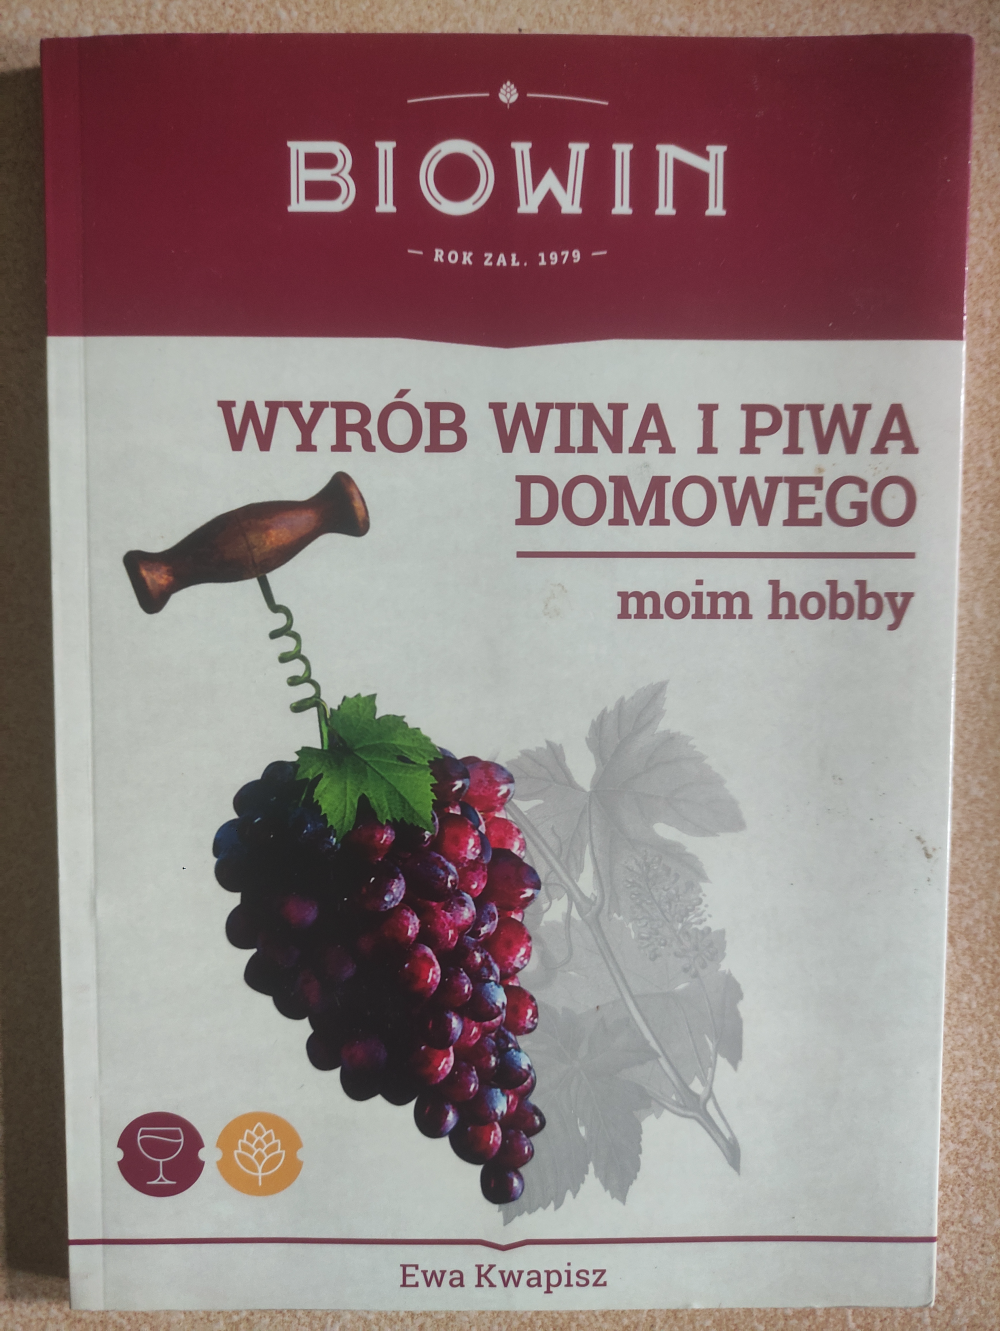 Książka wyrób wina i piwa domowego moim hobby biowin kwapysz